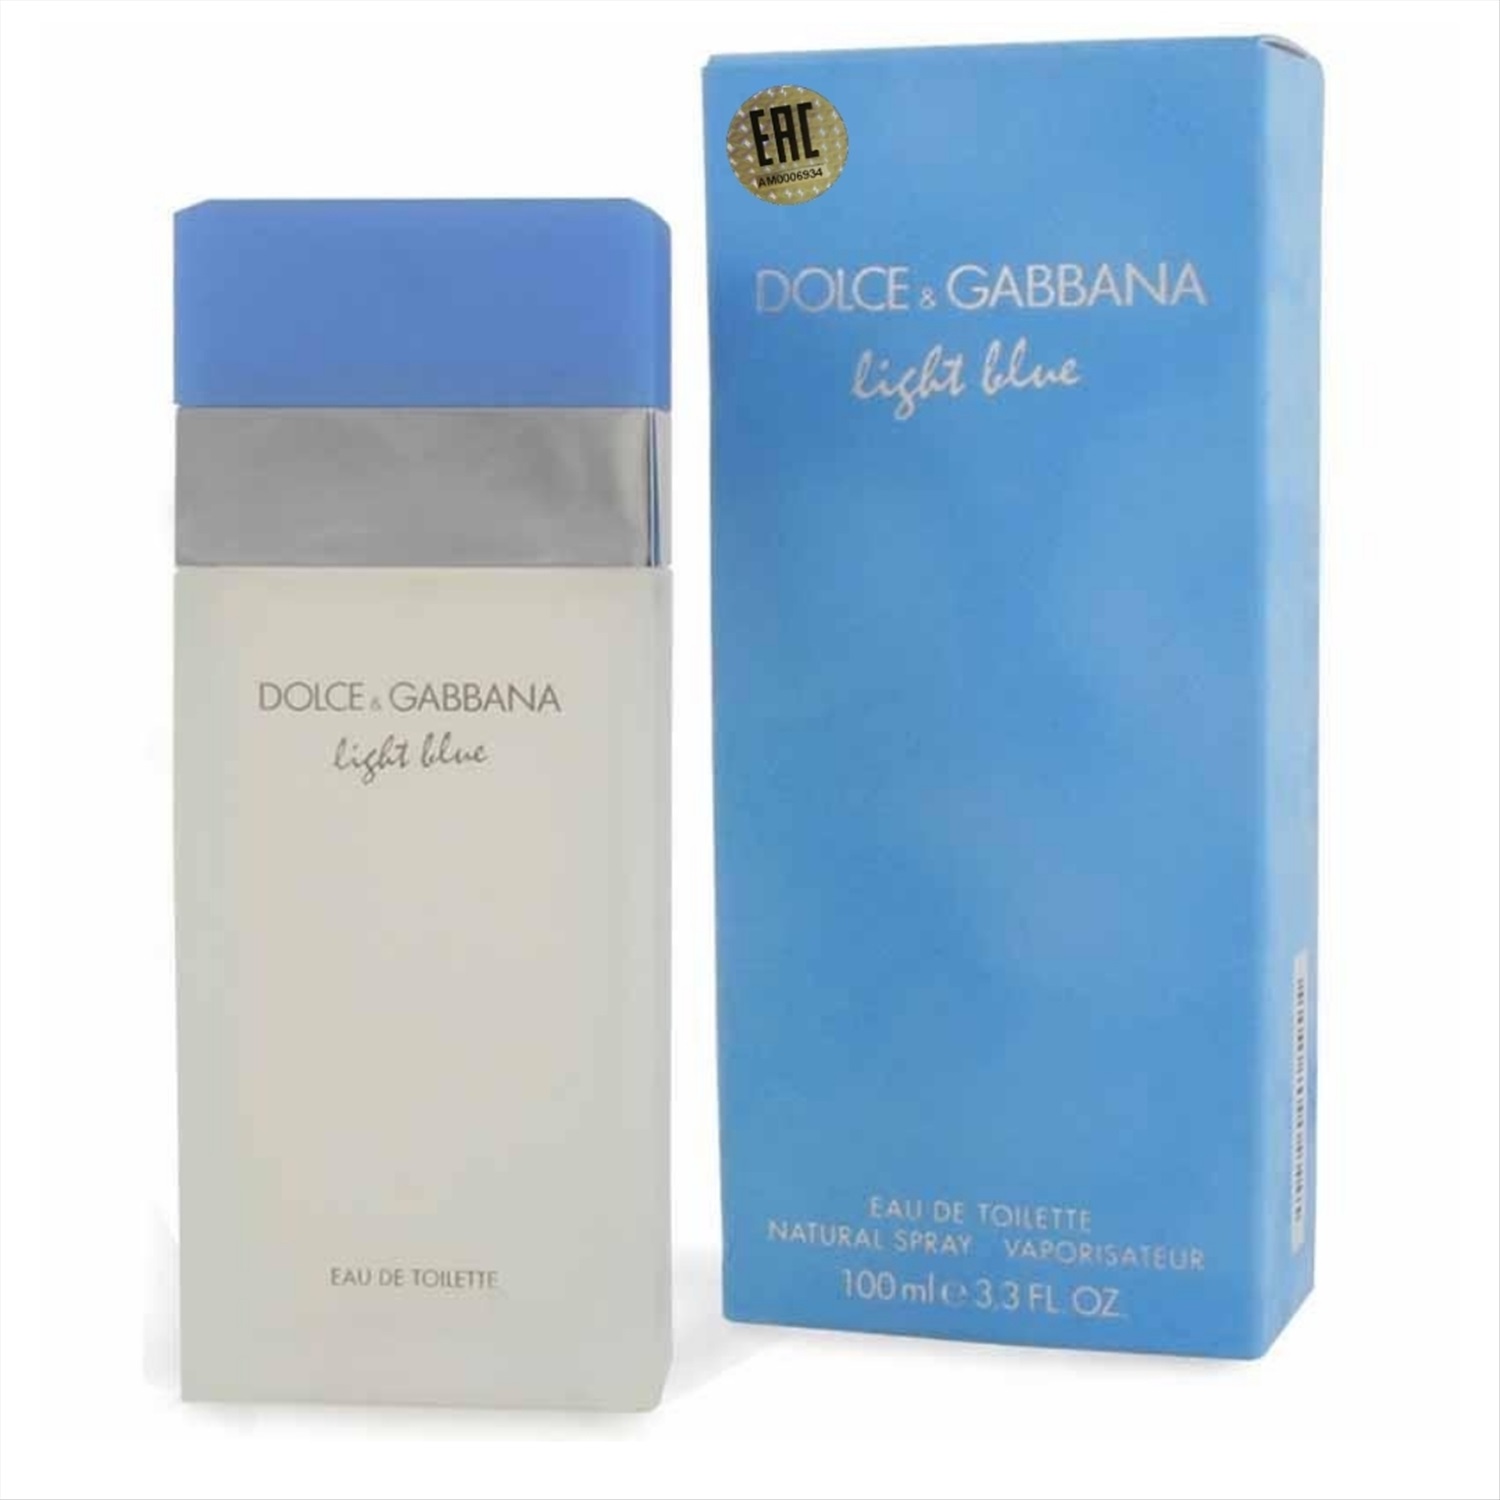 Духи дольче габбана light blue. Light Blue Dolce & Gabbana, 100ml, EDT. Dolce&Gabbana Light Blue туалетная вода 100 мл. Dolce Gabbana Light Blue женские 100ml. Dolce & Gabbana Light Blue (l) EDT 50 ml.